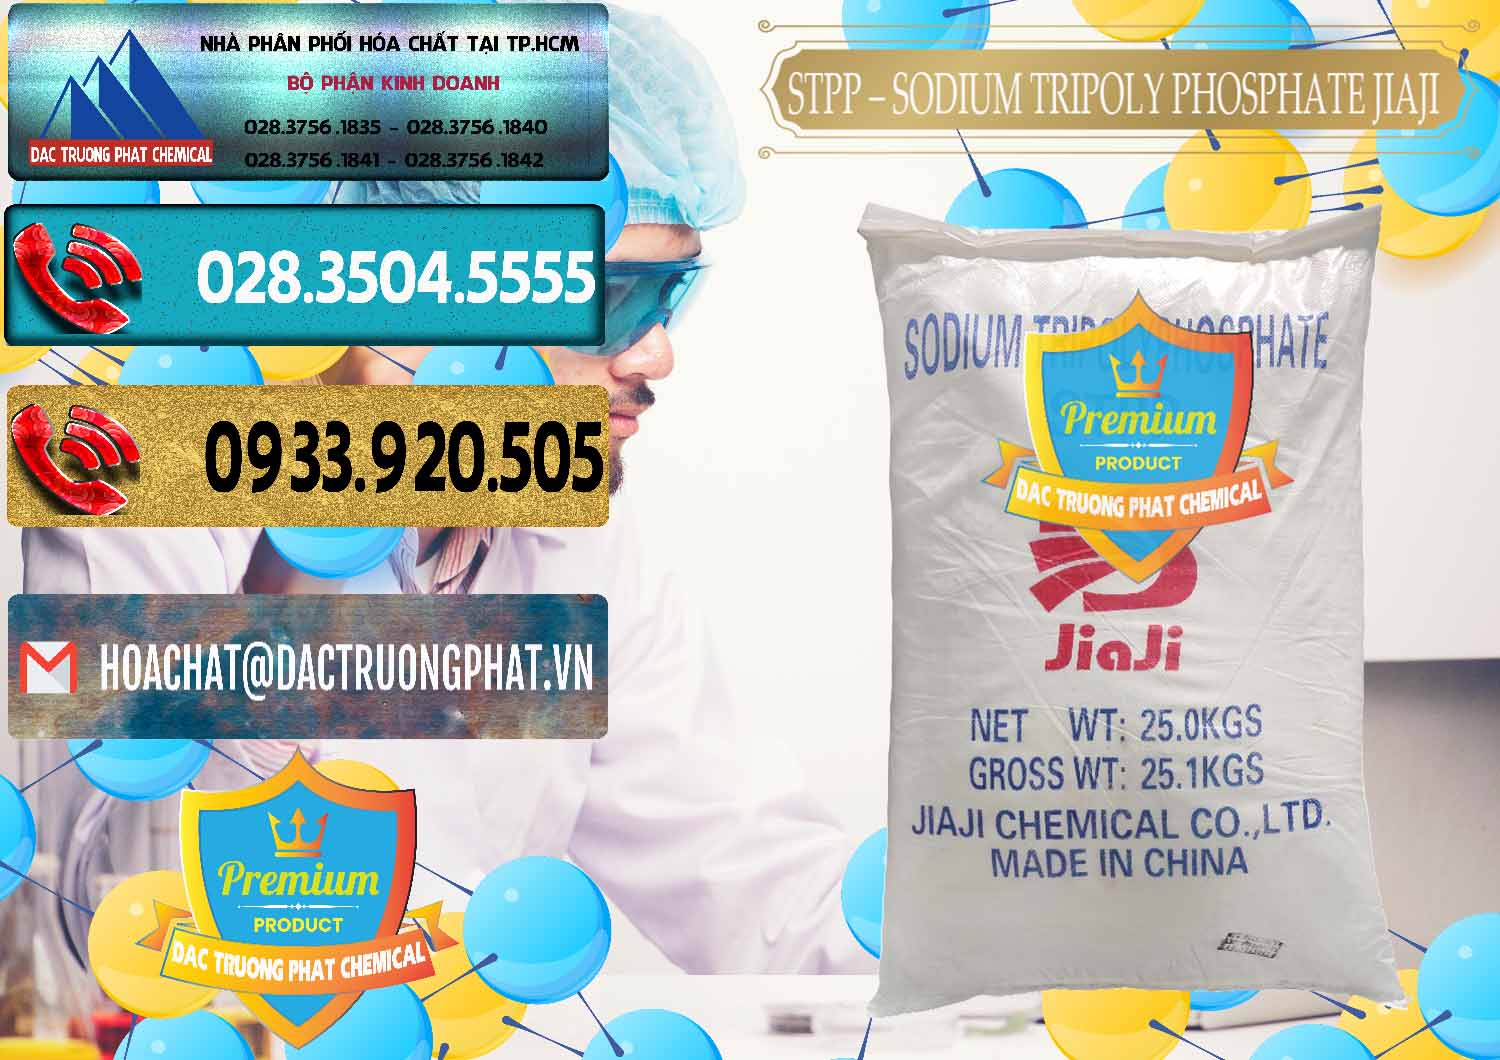 Cty chuyên cung ứng ( bán ) Sodium Tripoly Phosphate - STPP Jiaji Trung Quốc China - 0154 - Công ty chuyên kinh doanh ( phân phối ) hóa chất tại TP.HCM - hoachatdetnhuom.com